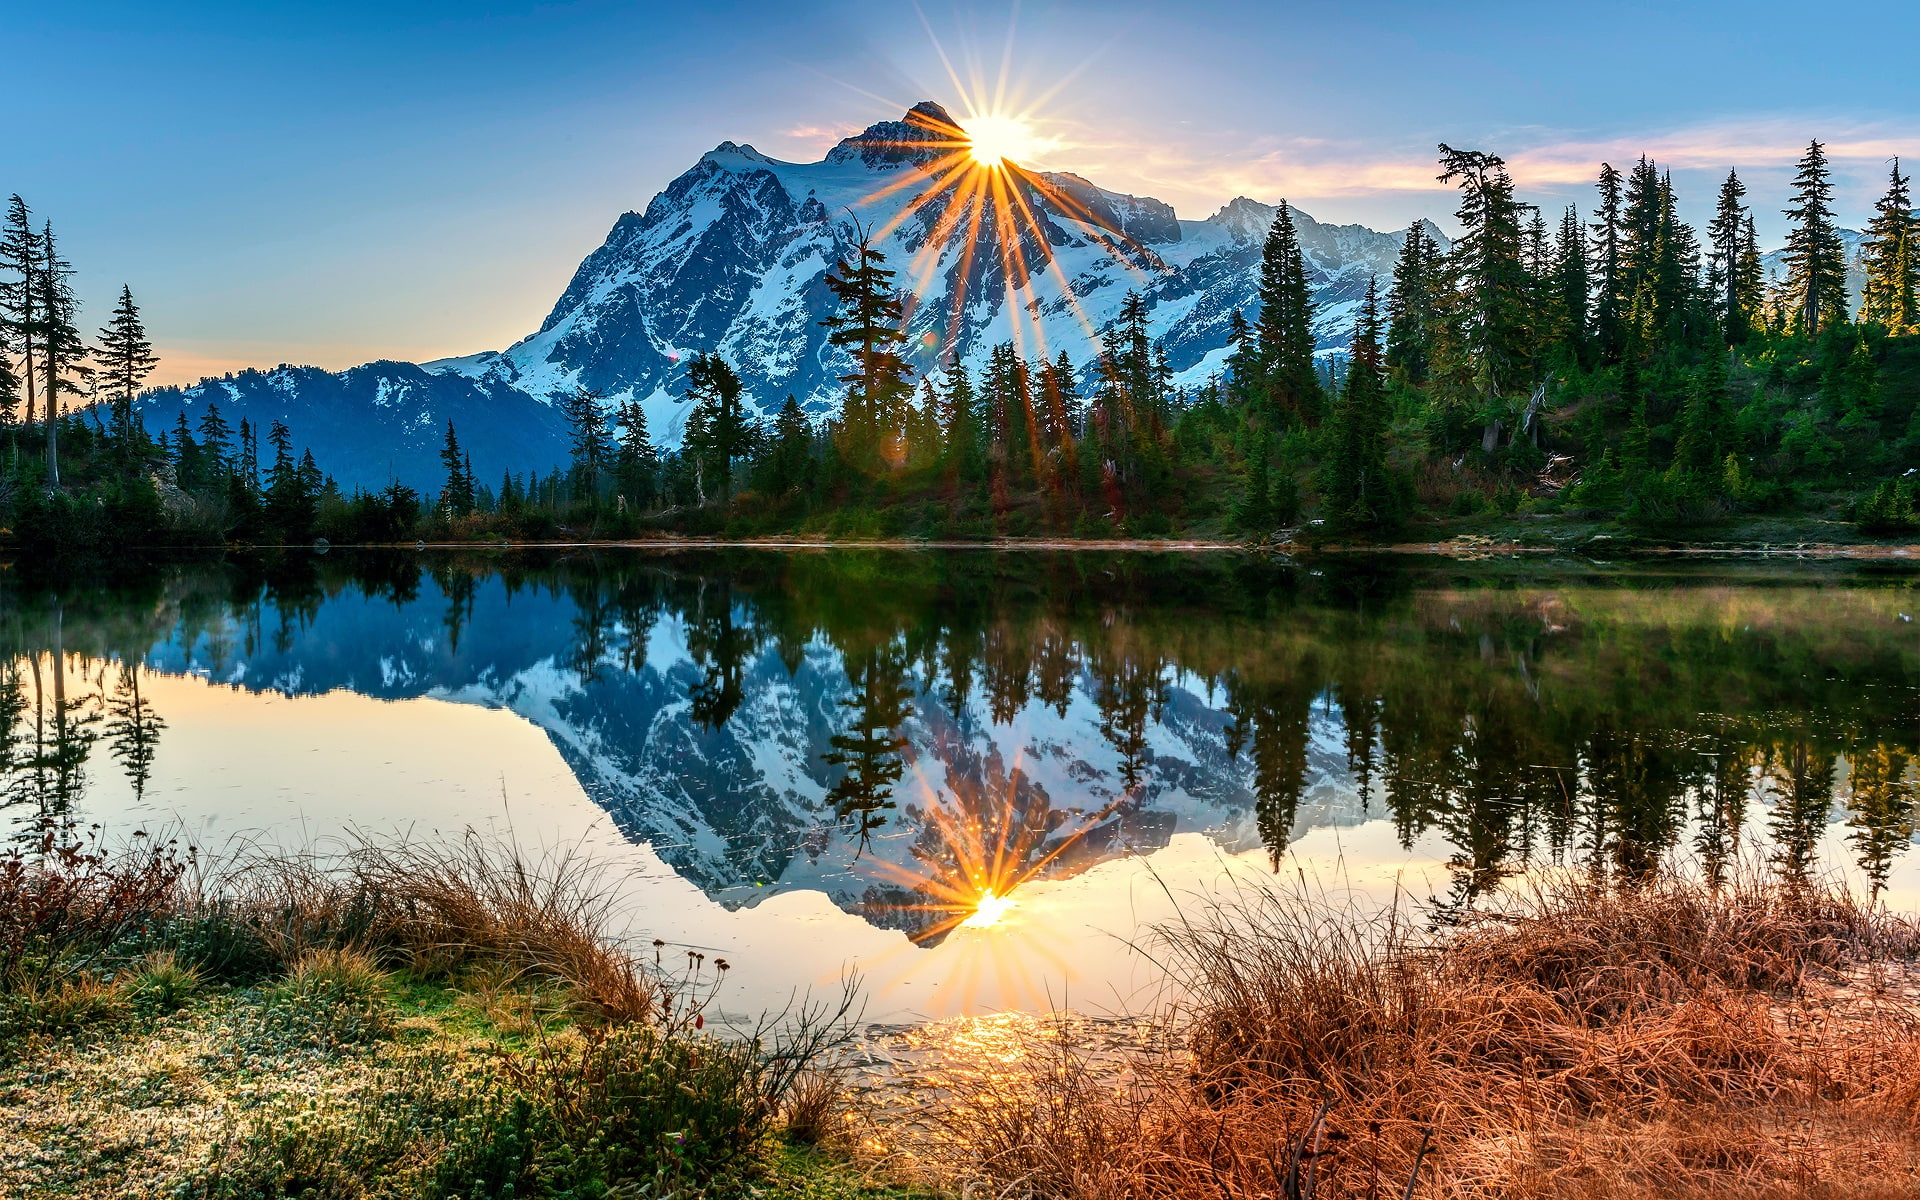 USA, Washington, Mount Baker volcano, lake, reflection, morning, sunrise, forest, green leaf tree lot